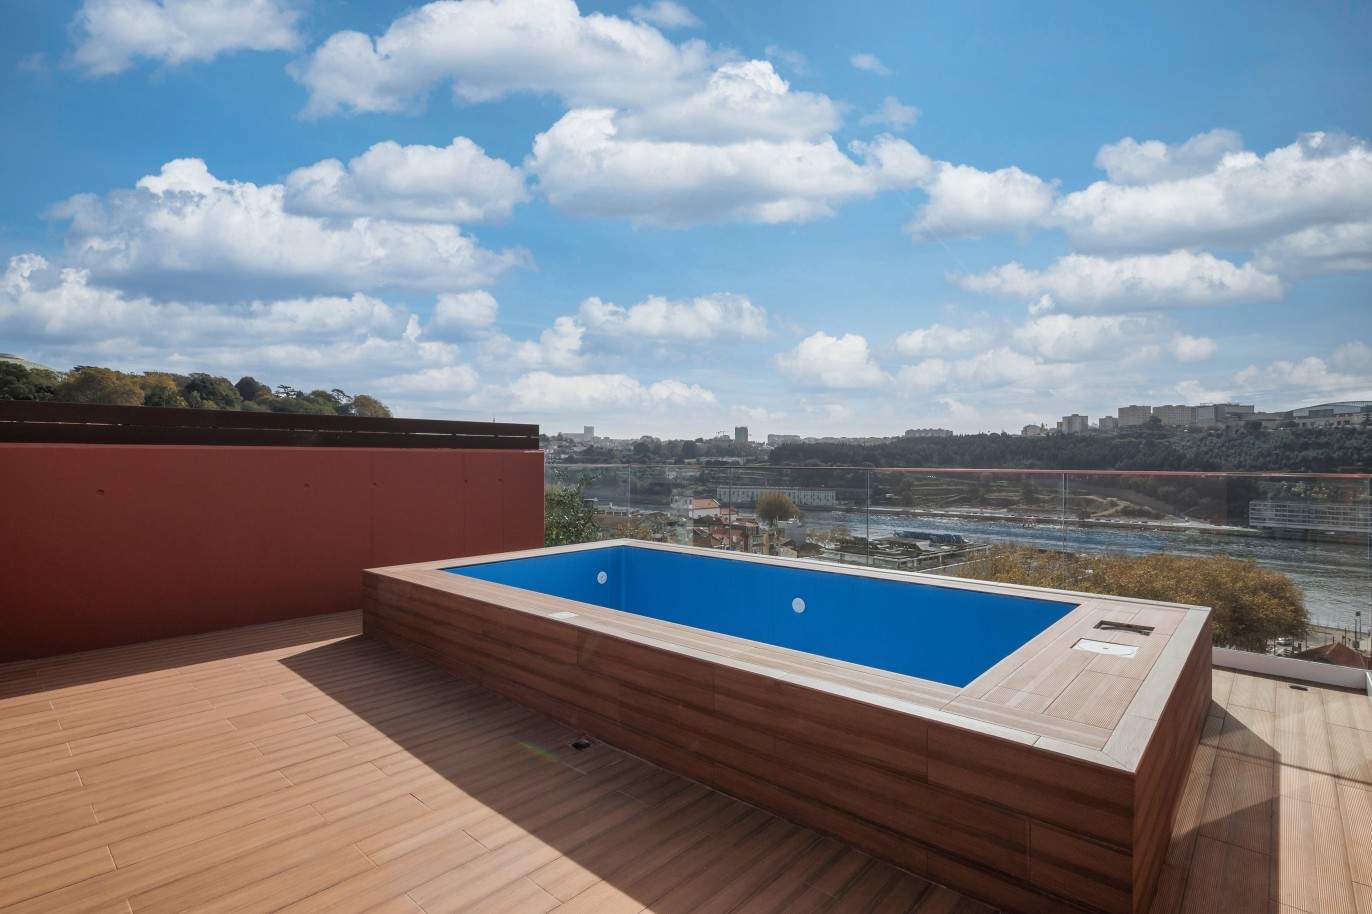 Penthouse nueva de 3 dormitorios con terraza y piscina, Oporto, Portugal_211624